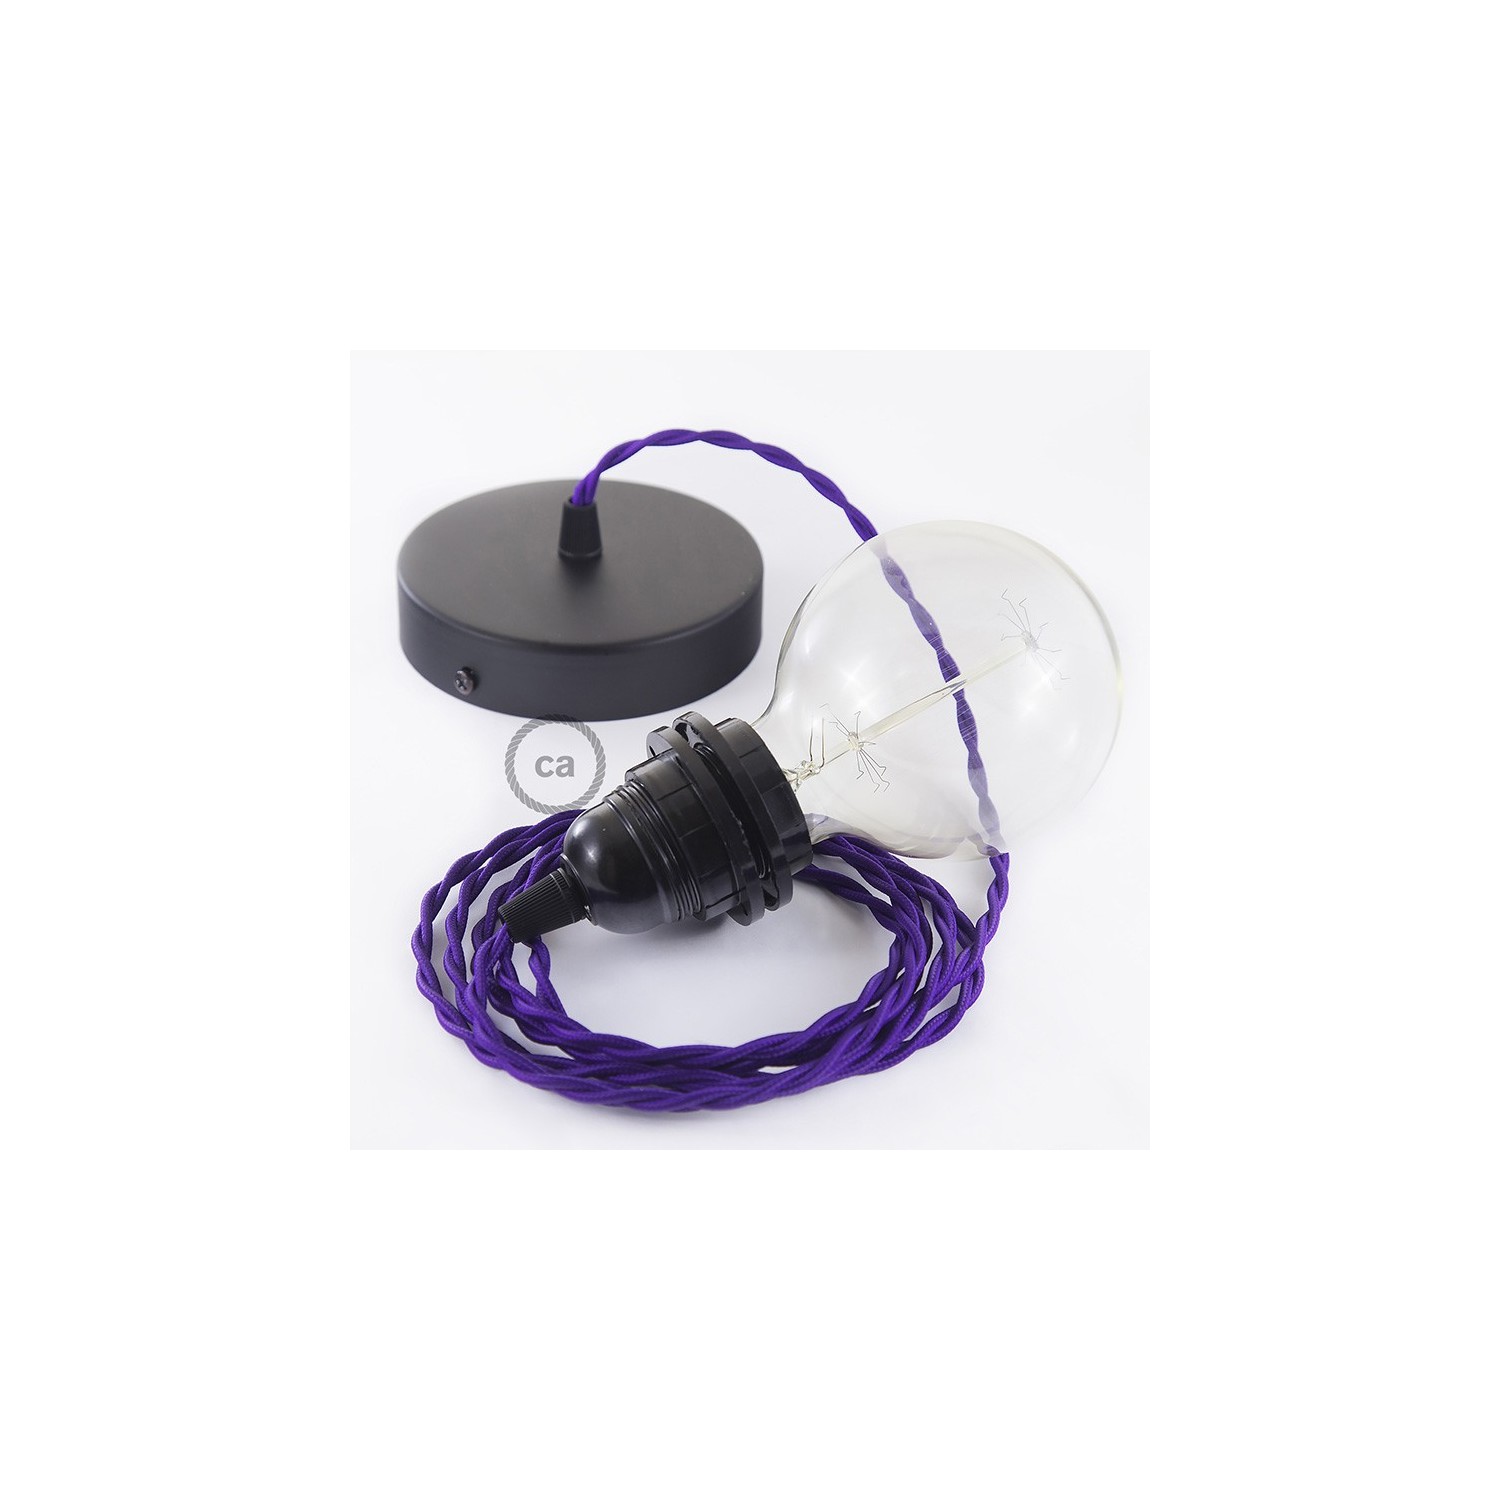 Verlichtingspendel E27 geschikt voor lampenkap. Hanglamp met gevlochten paars viscose textielkabel – TM14